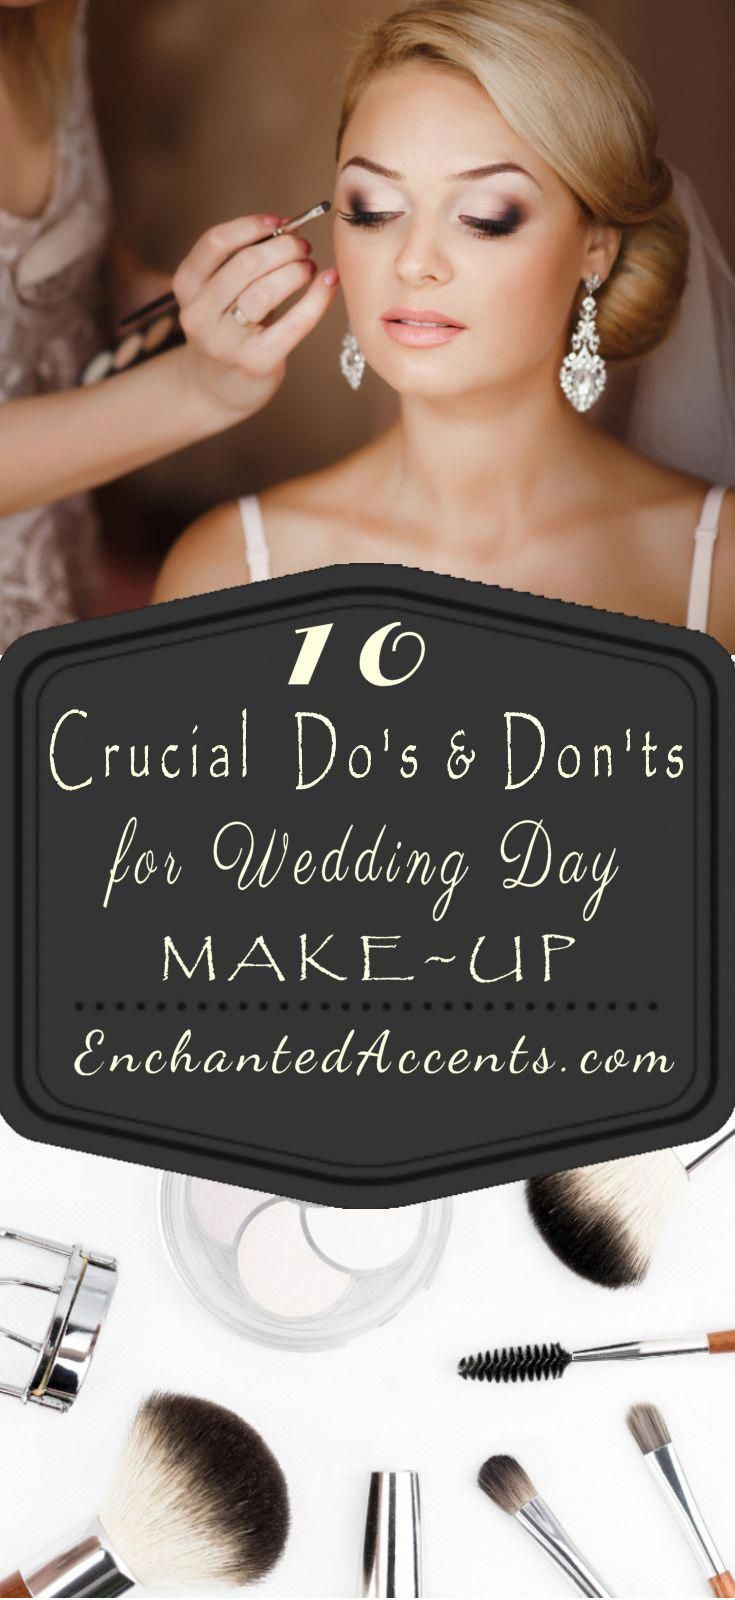 15 makeup Dia wedding hairstyles ideas